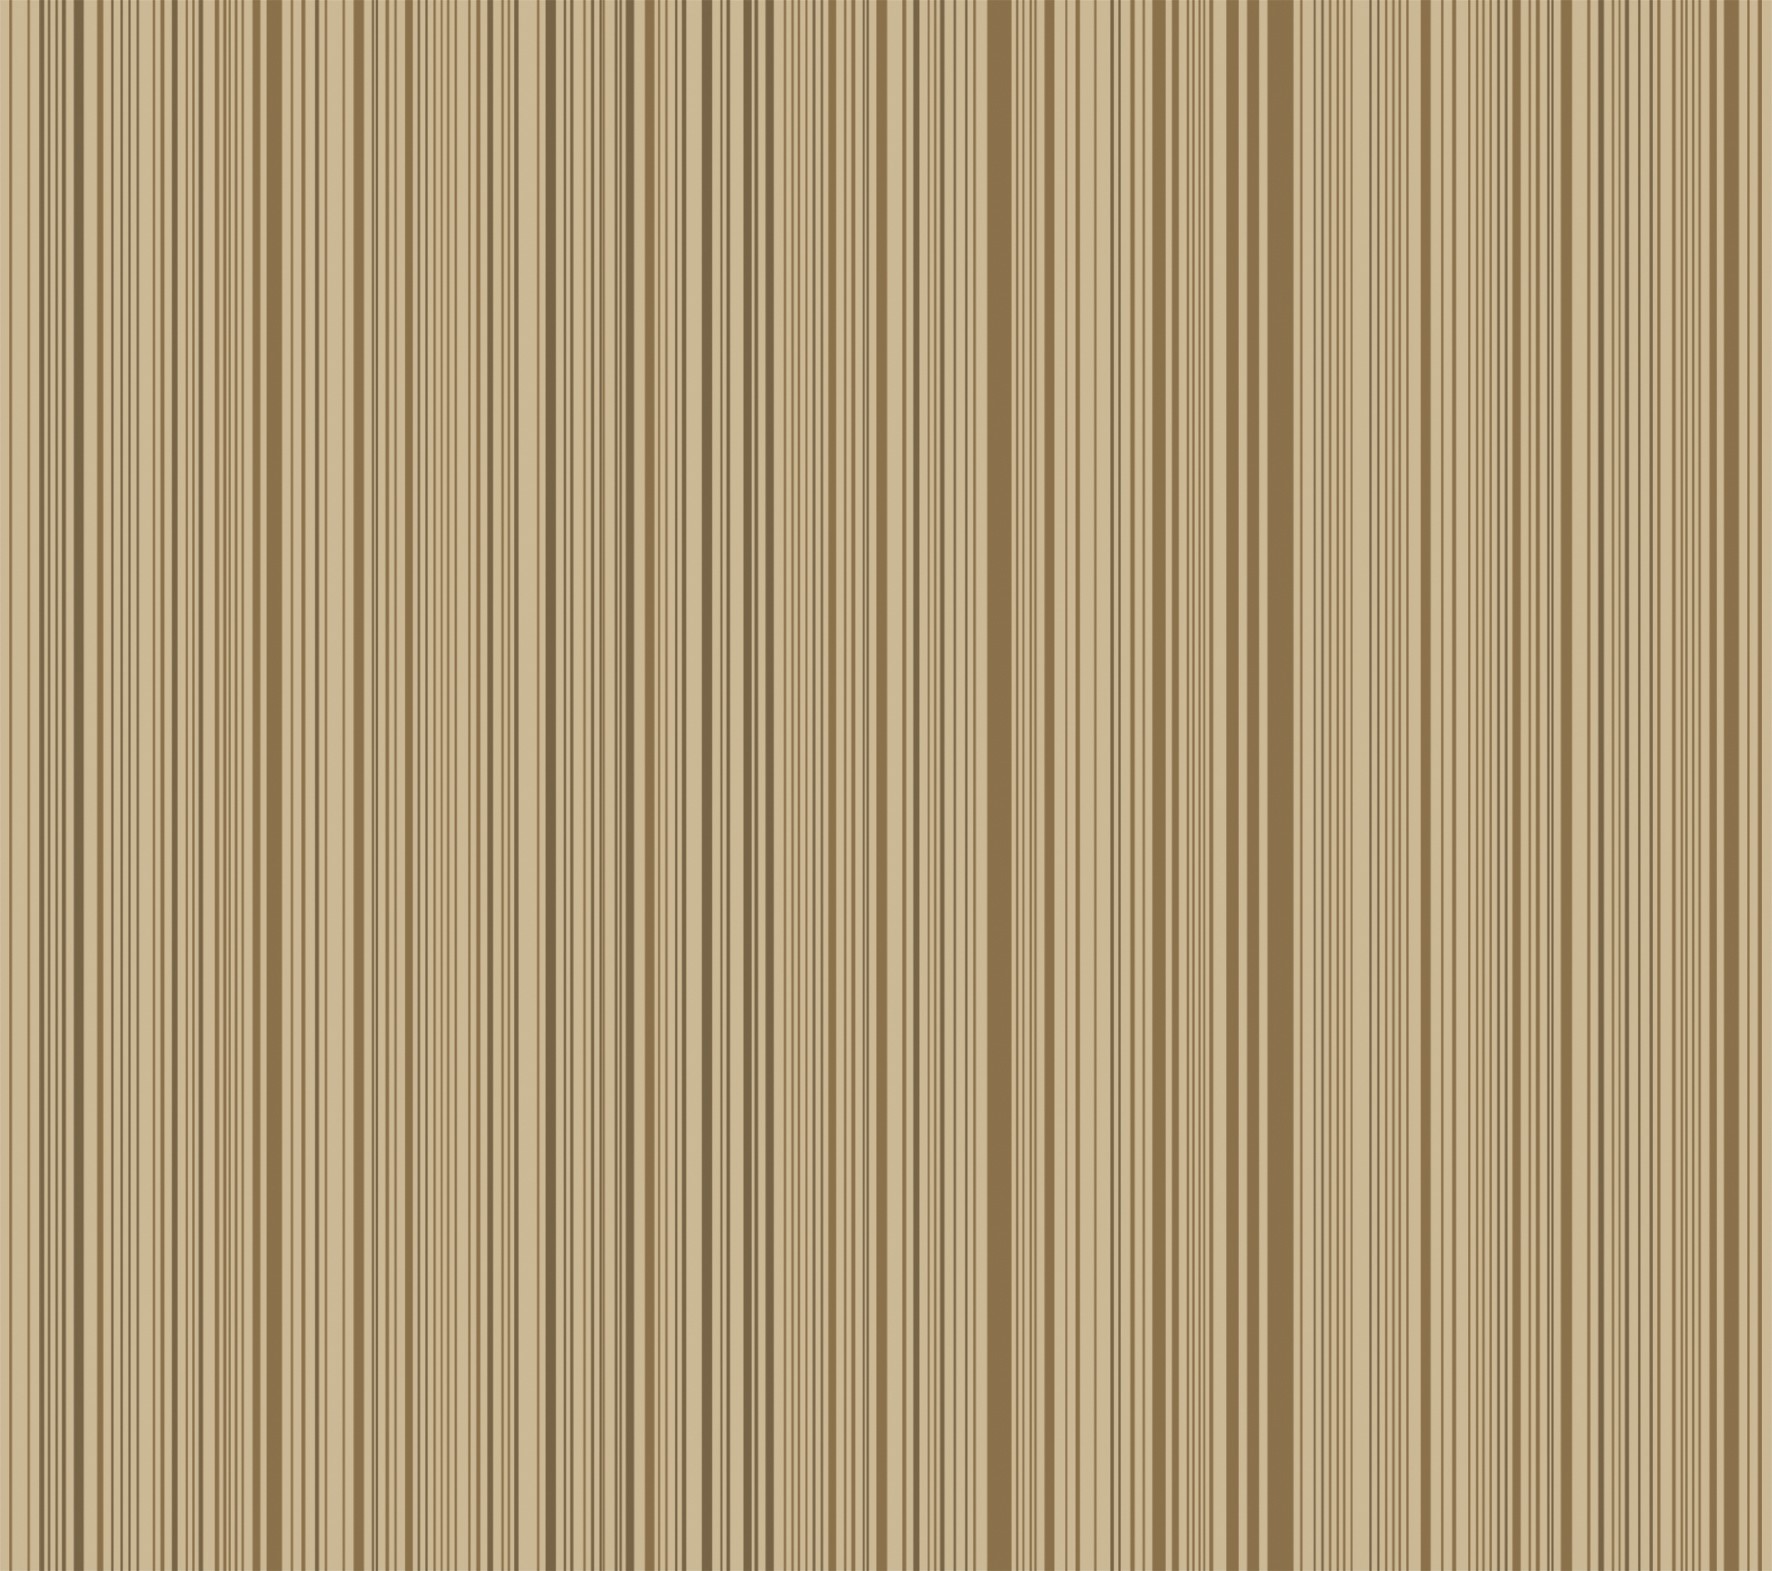 壁纸-优雅条纹 木纤维ID6424